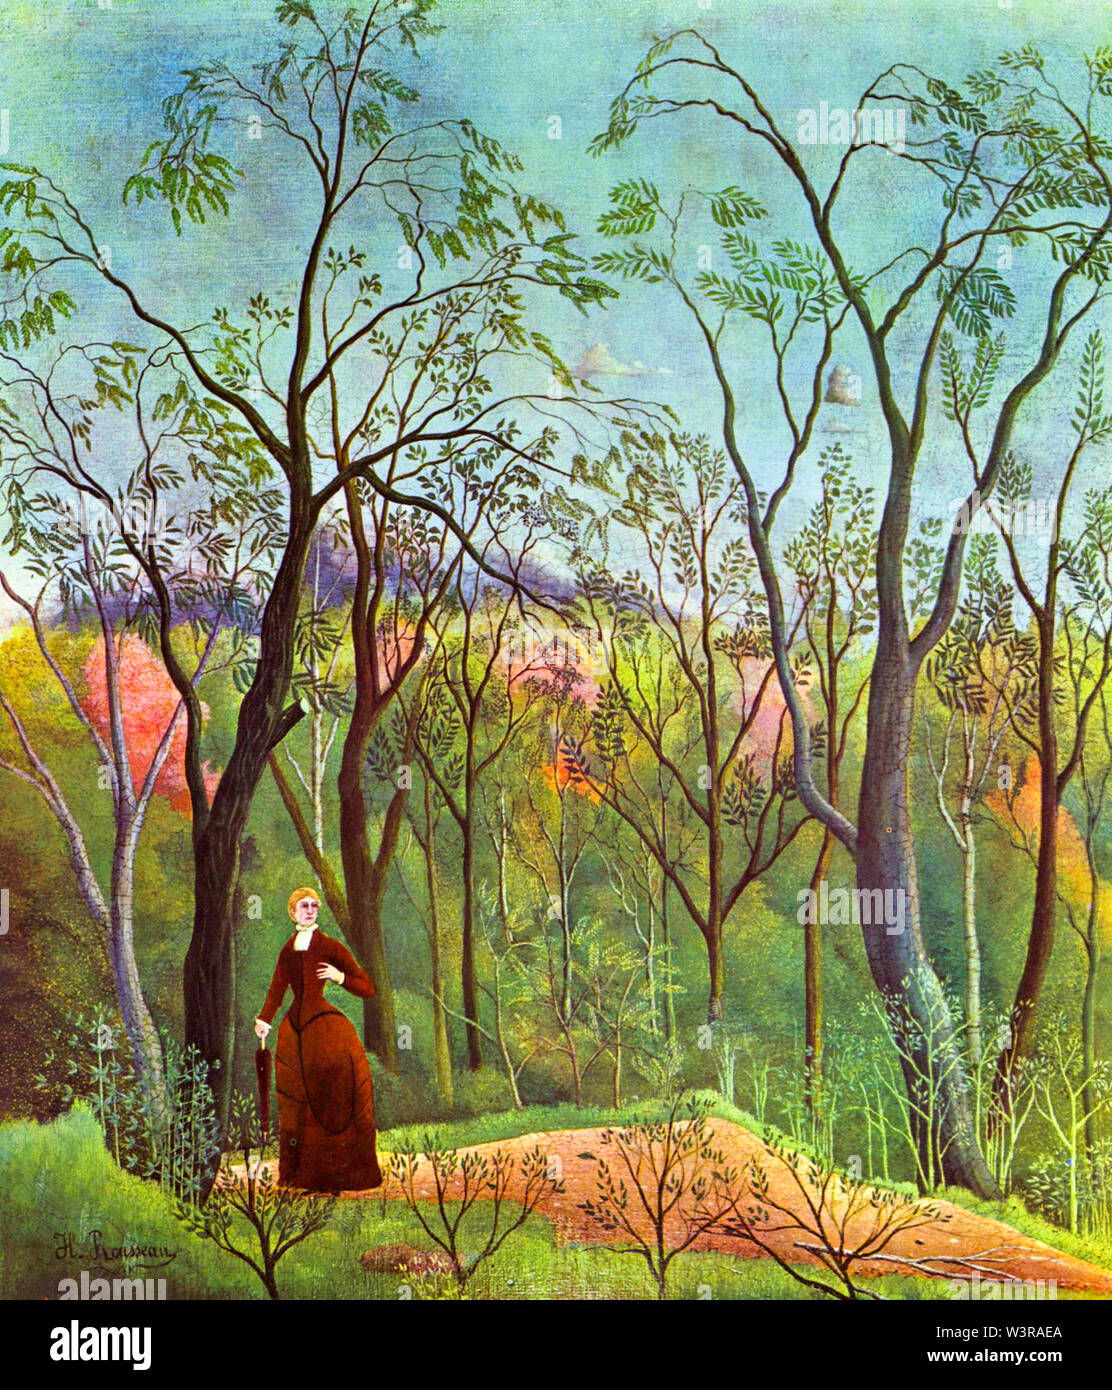 Henri Rousseau, la promenade en forêt, peinture, vers 1886 Banque D'Images